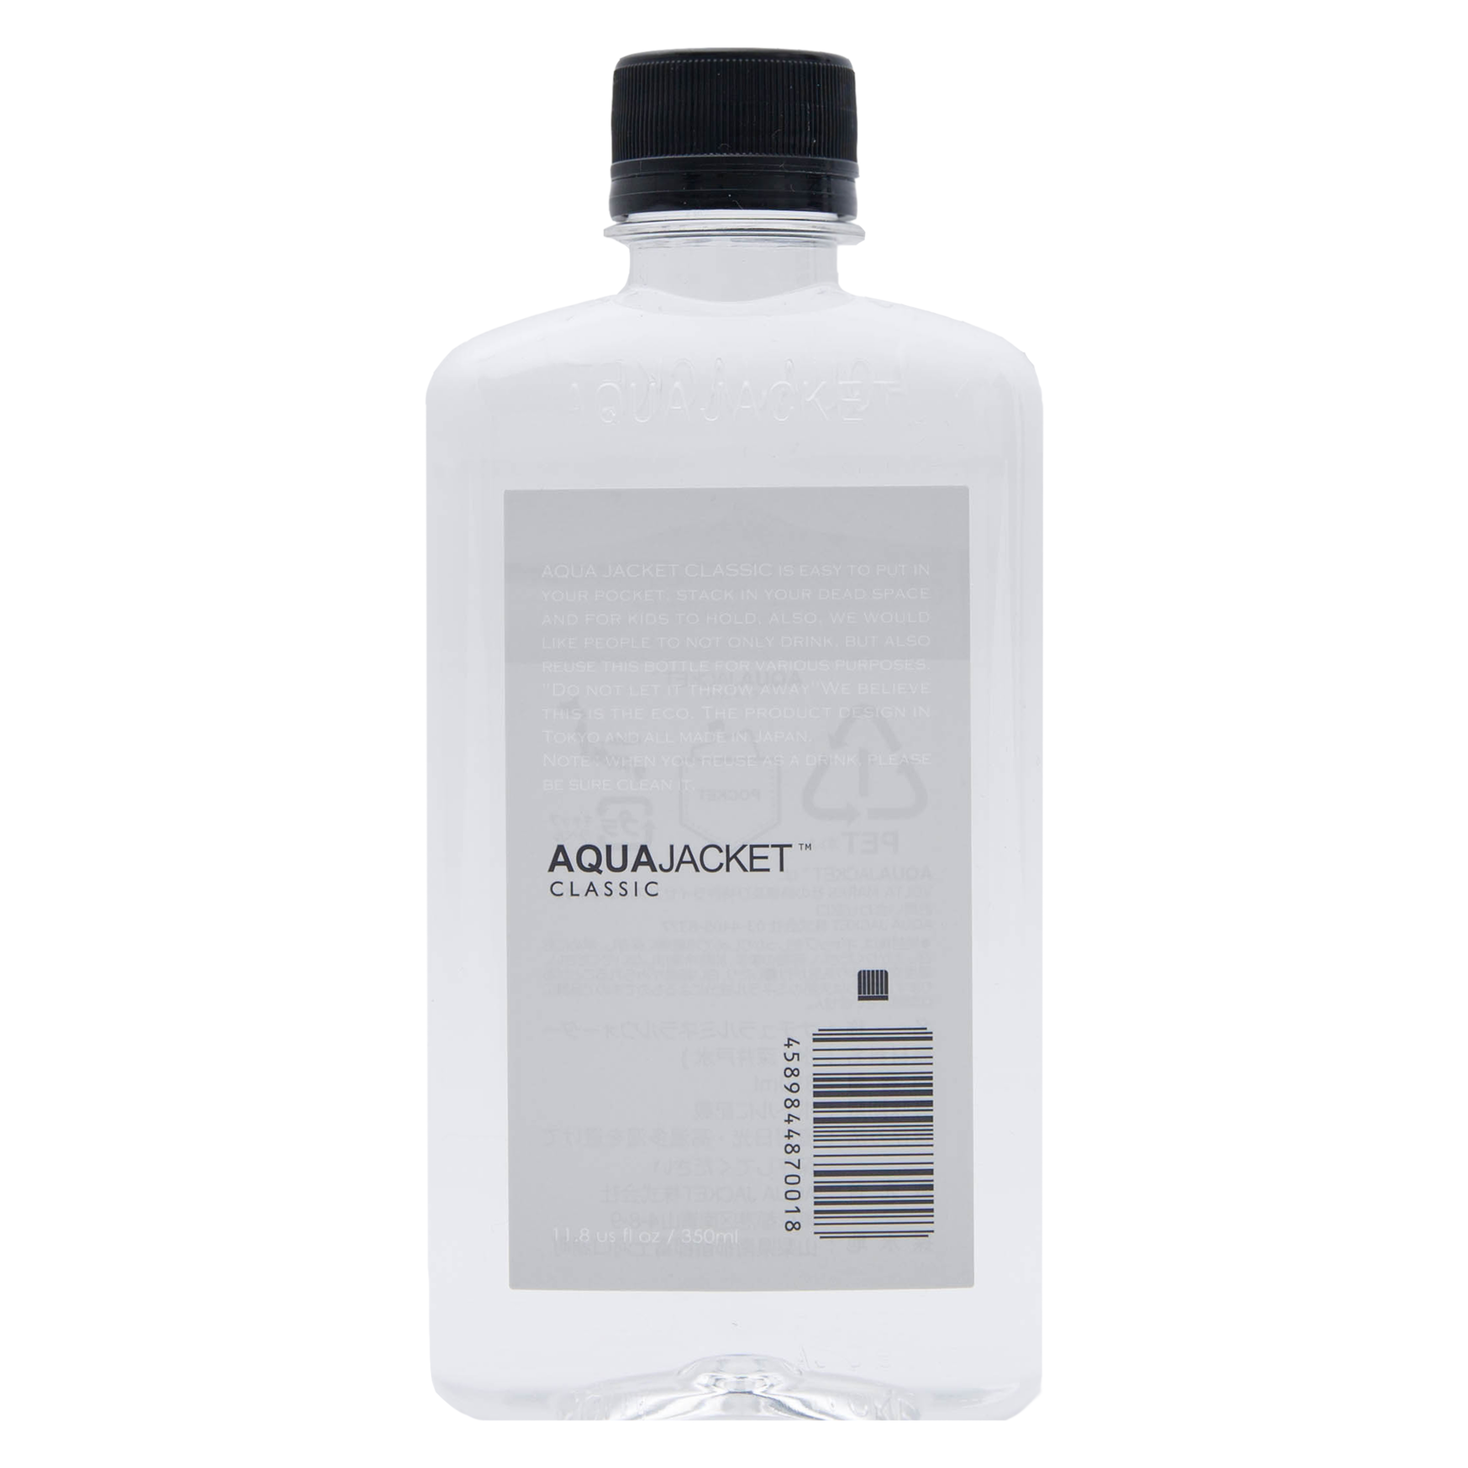 ペットボトル飲料業界の常識を破るaqua Jacket Classicが公式hpからも発売開始 Aqua Jacket株式会社のプレスリリース